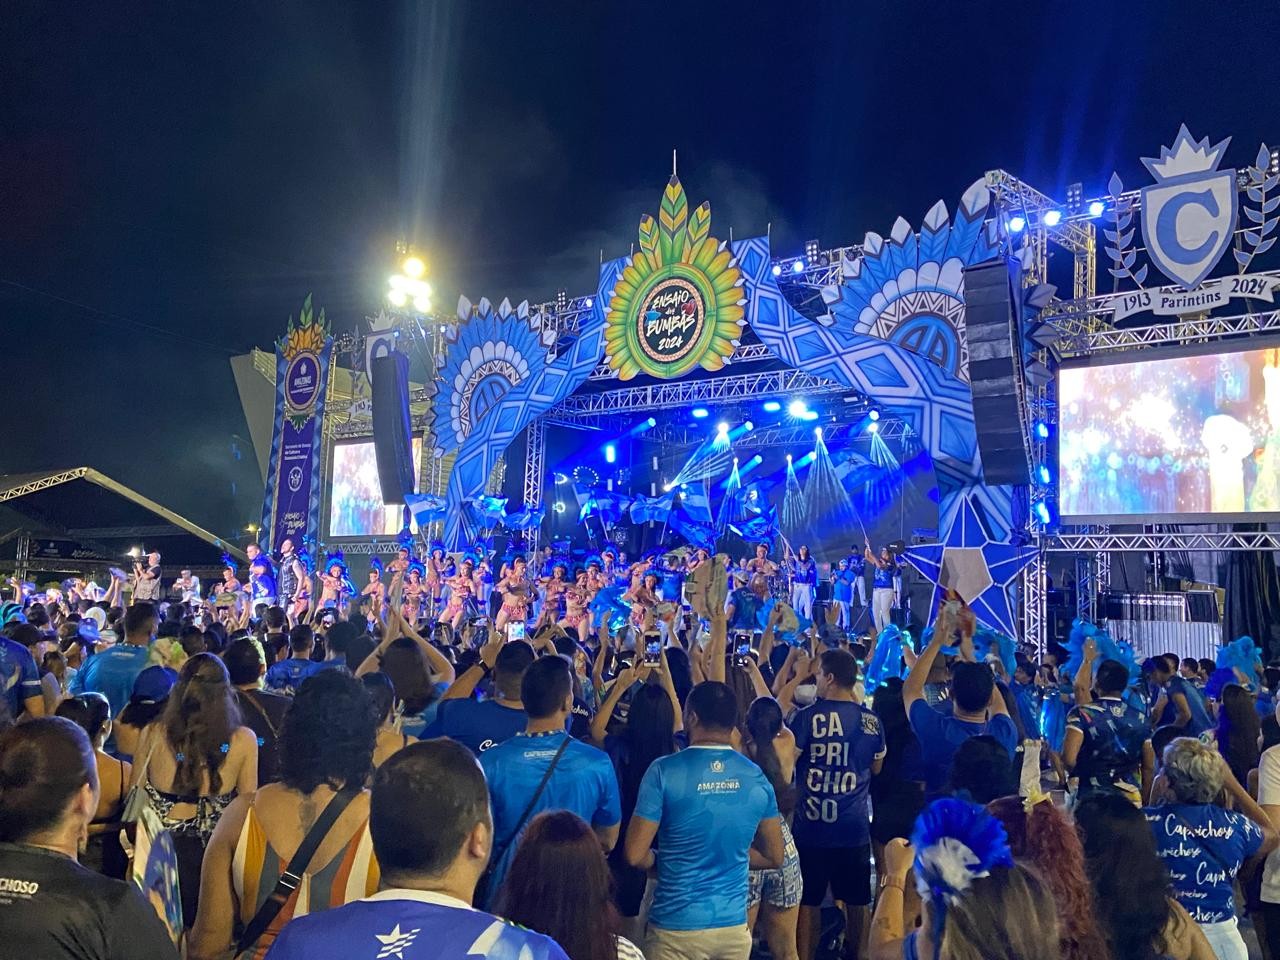 Festa de lançamento do álbum do Caprichoso em Manaus reúne multidão de torcedores